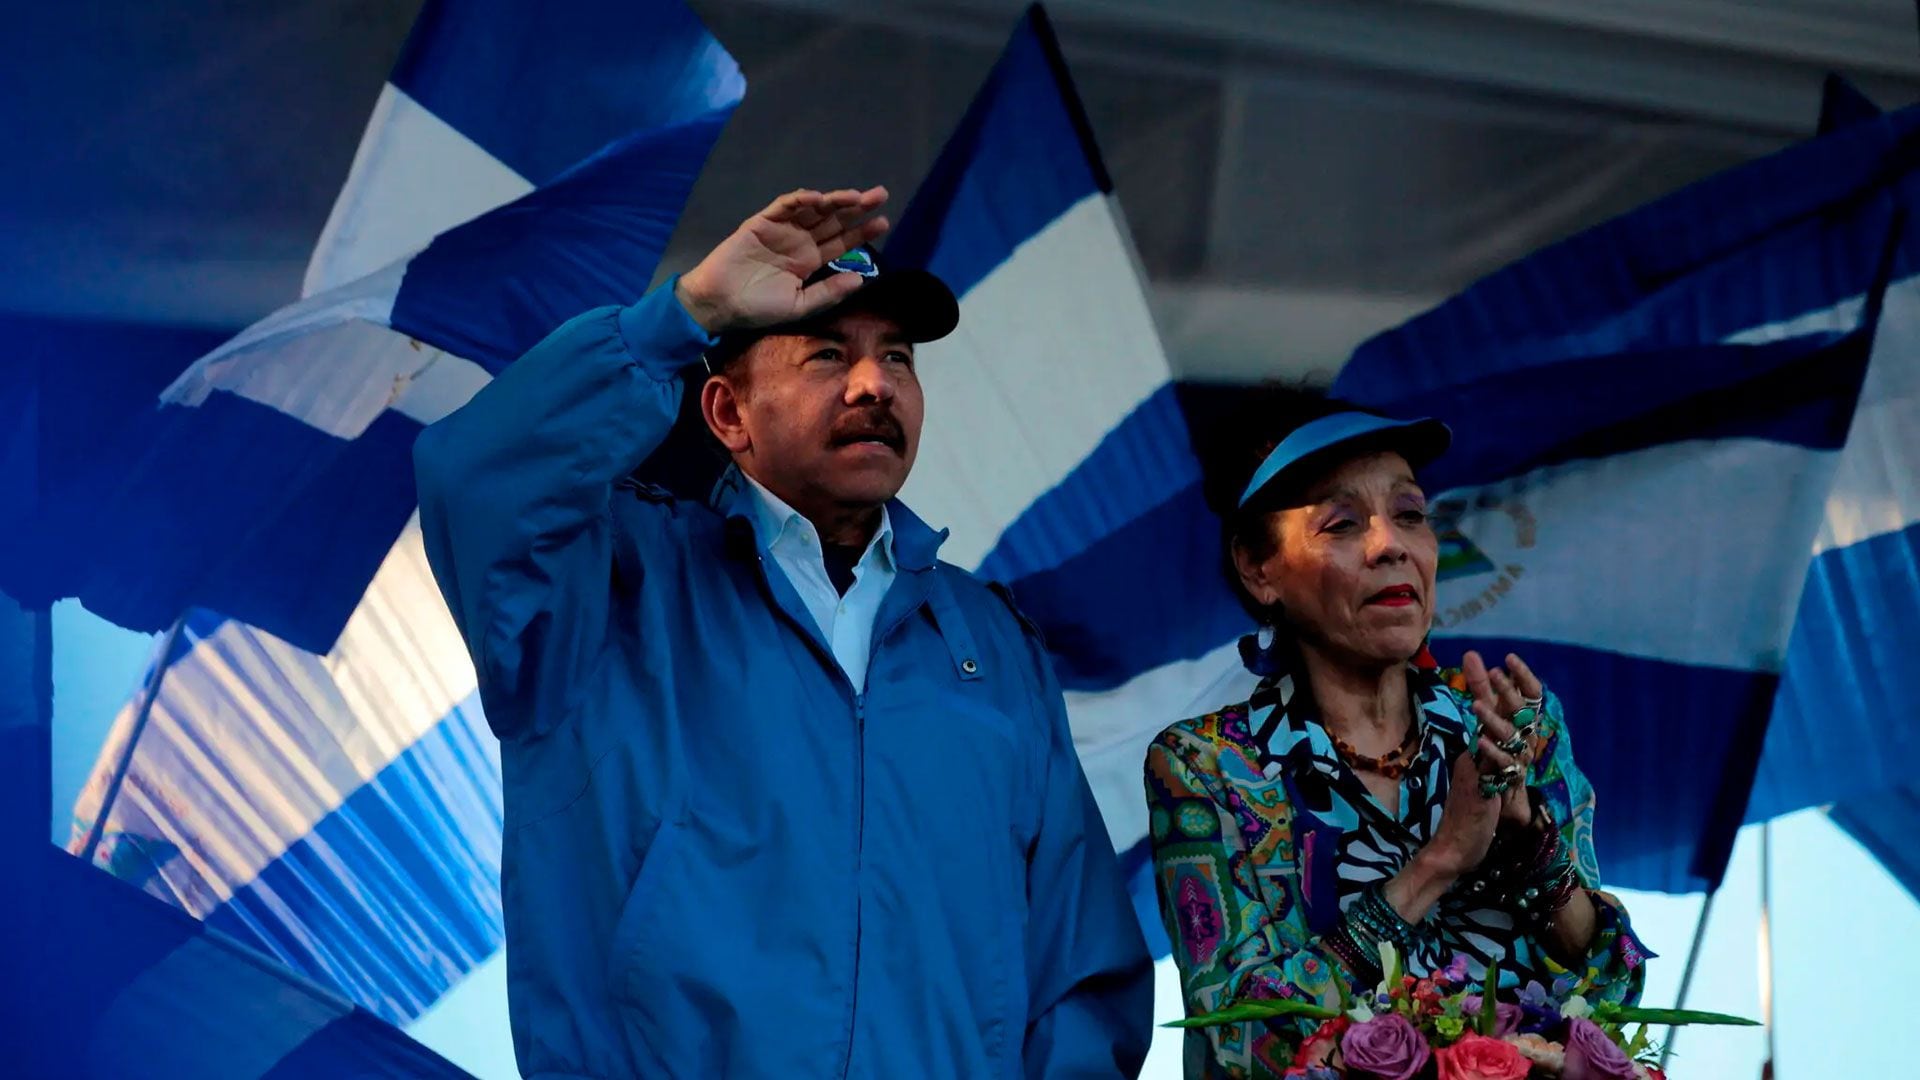 El régimen de Ortega aumentó la persecución contra la Iglesia nicaragüense desde el estallido social en 2018 (Reuters)